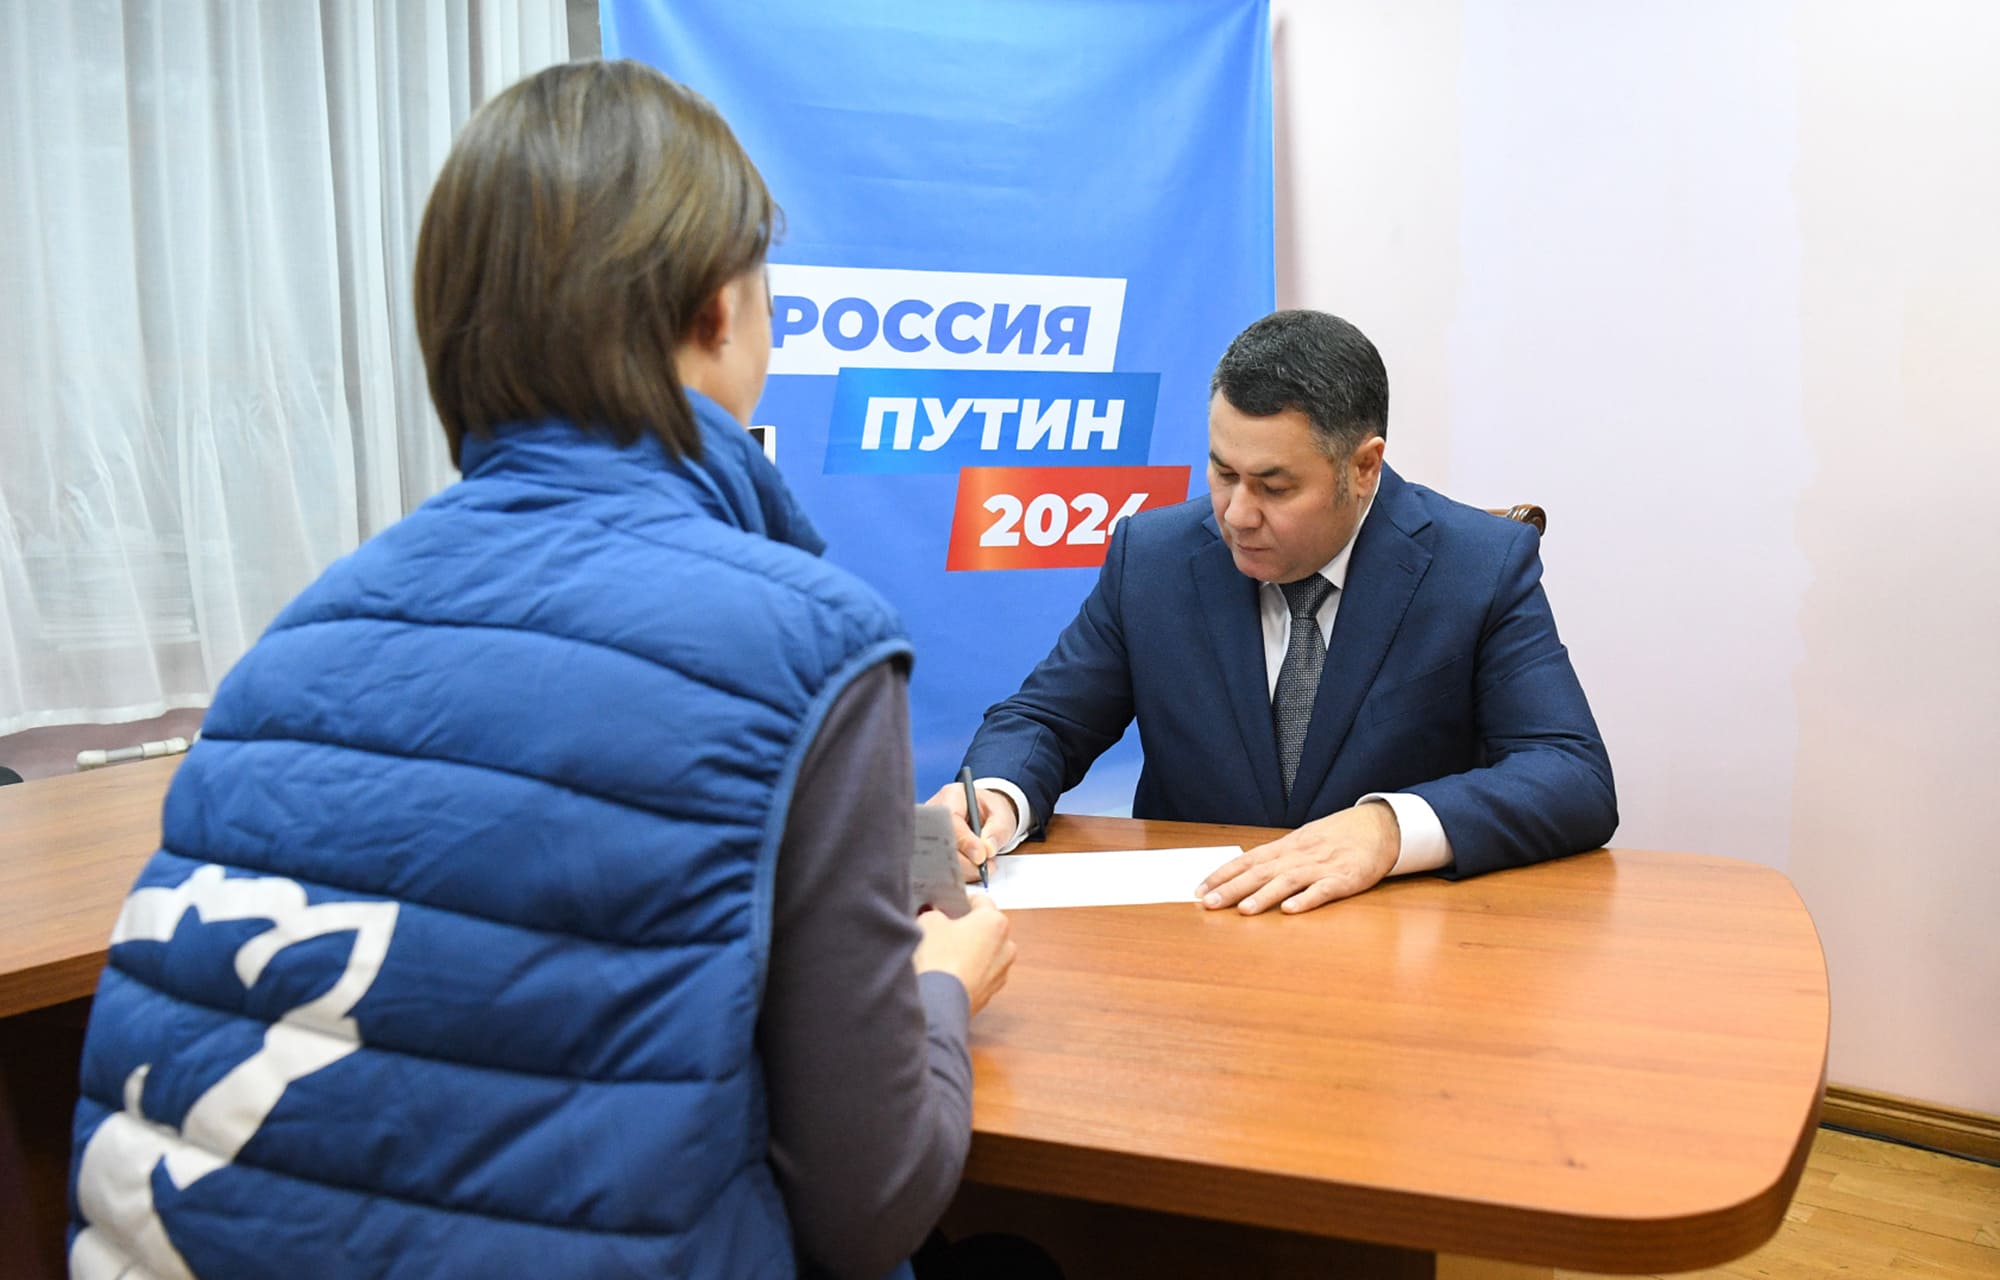 Губернатор Тверской области Игорь Руденя поставил подпись в поддержку выдвижения Владимира Путина на президентские выборы